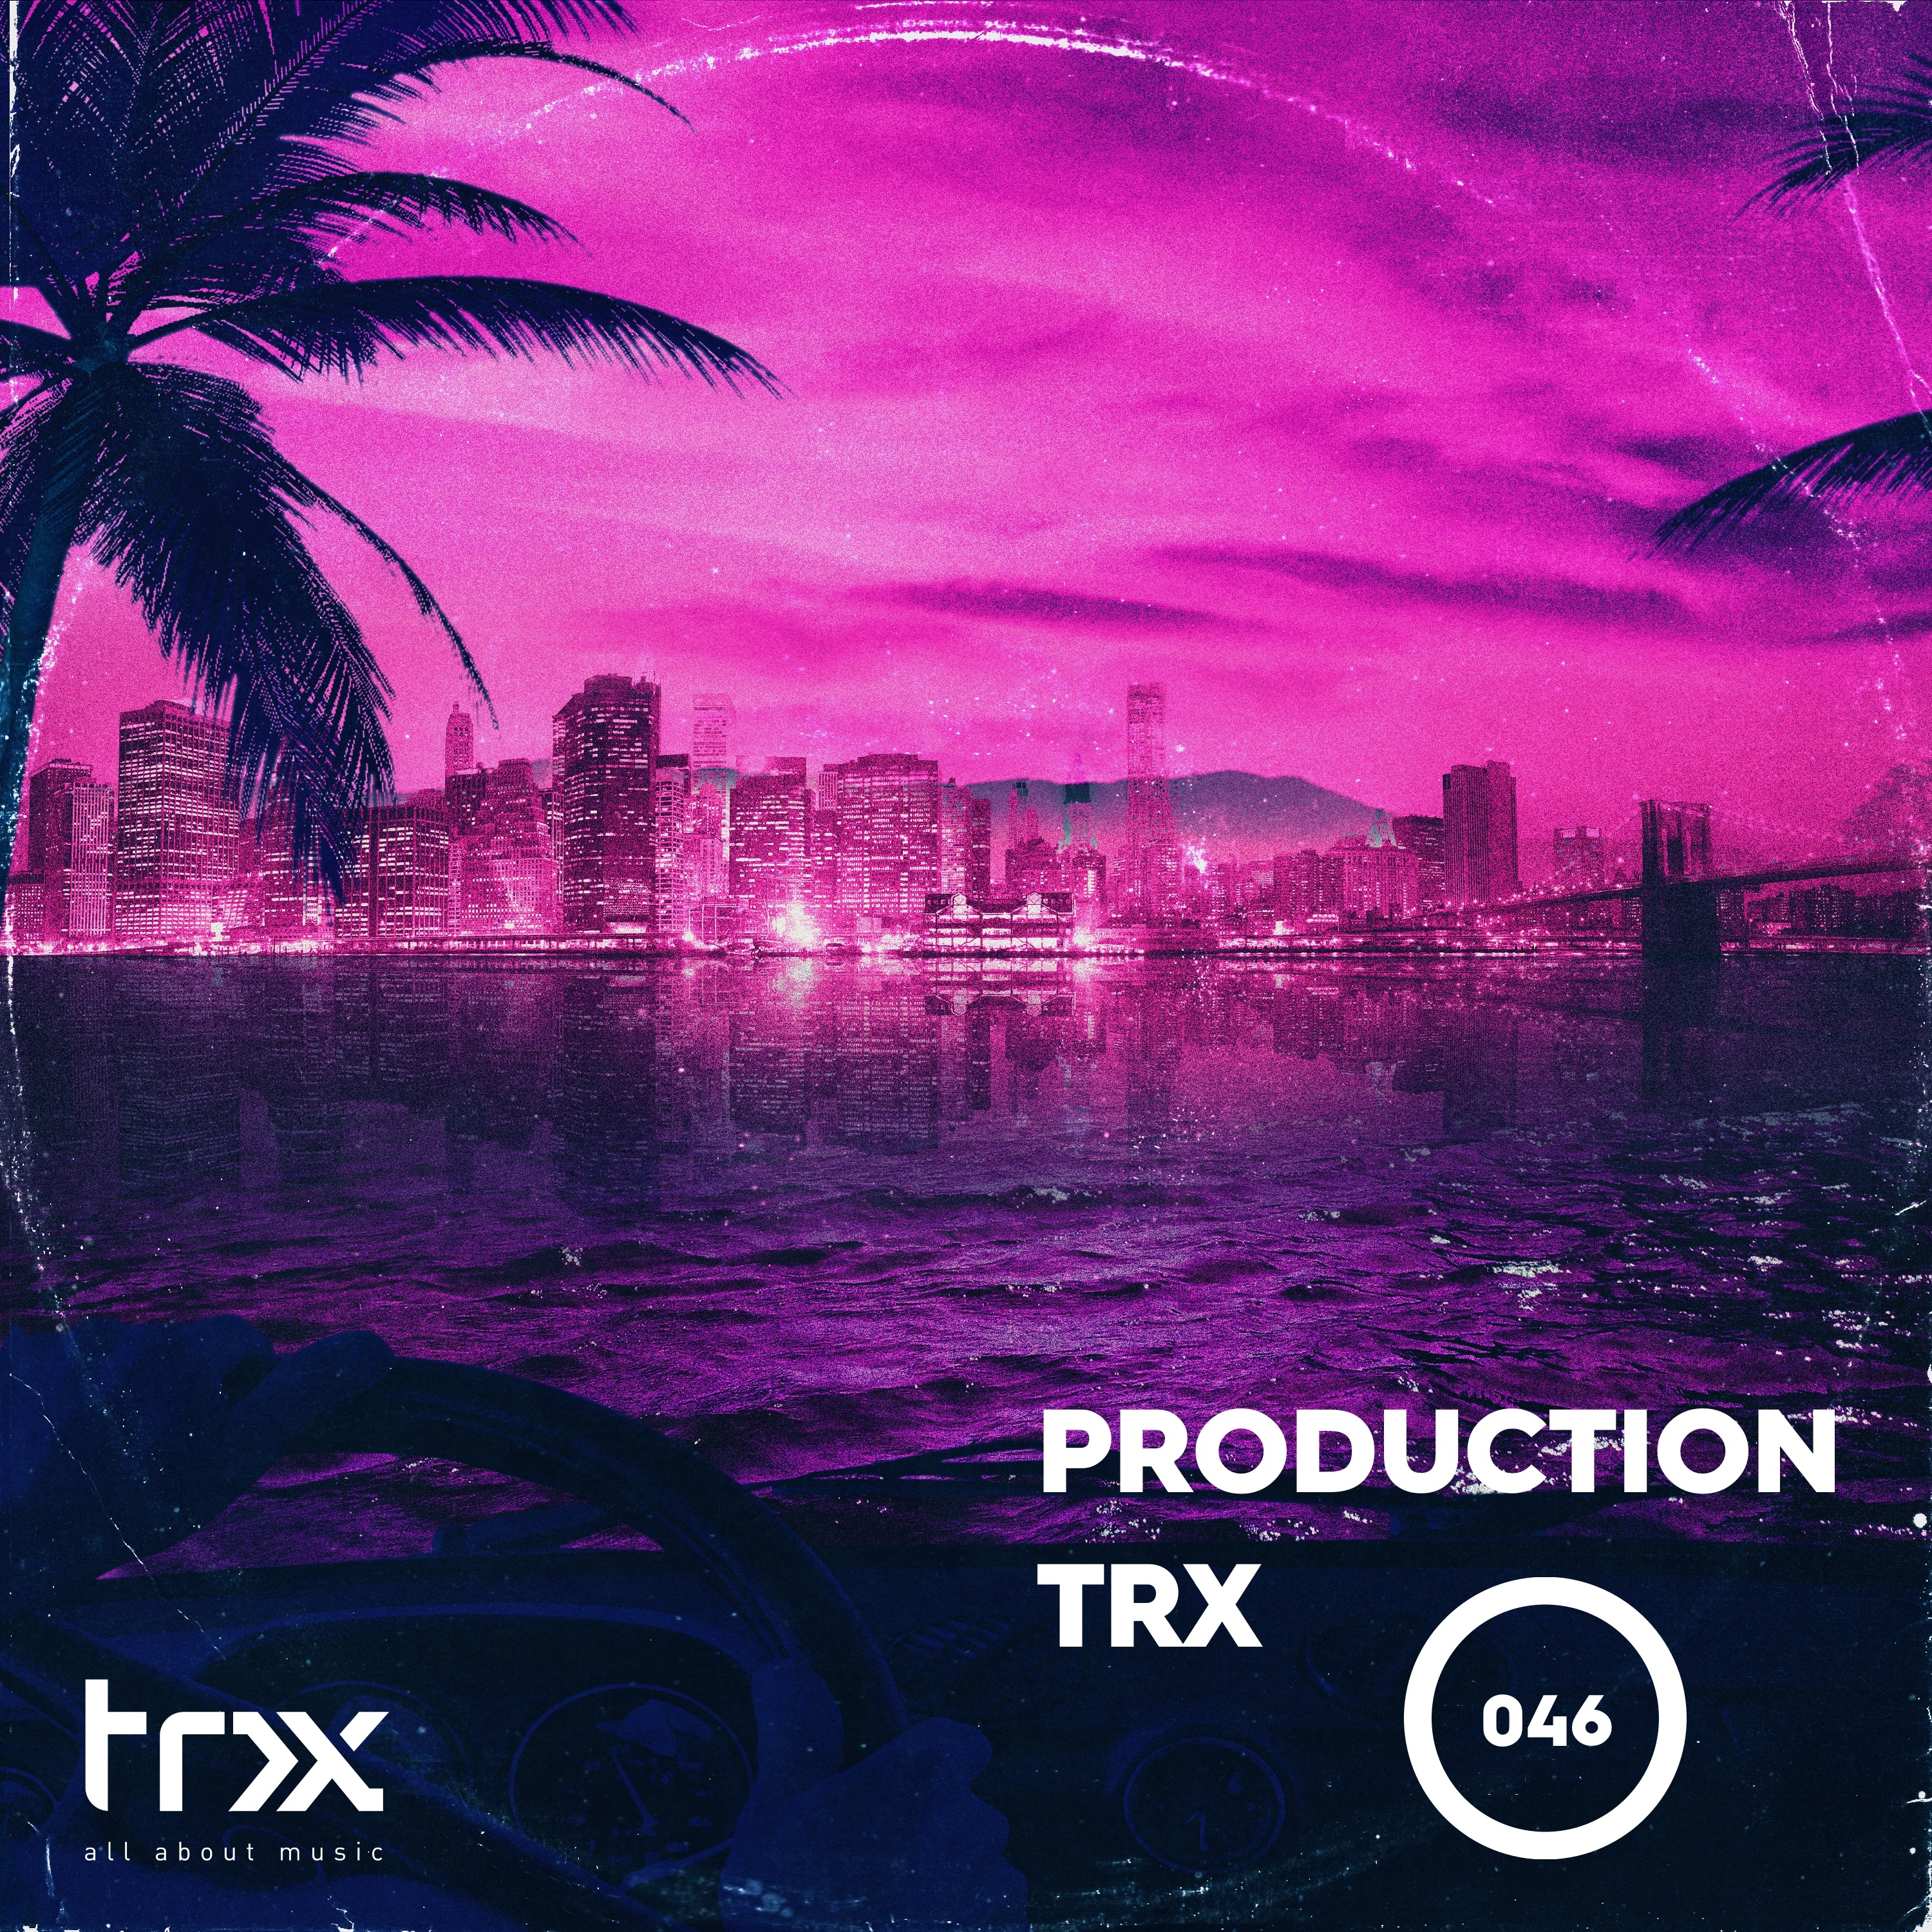 Production TRX 046